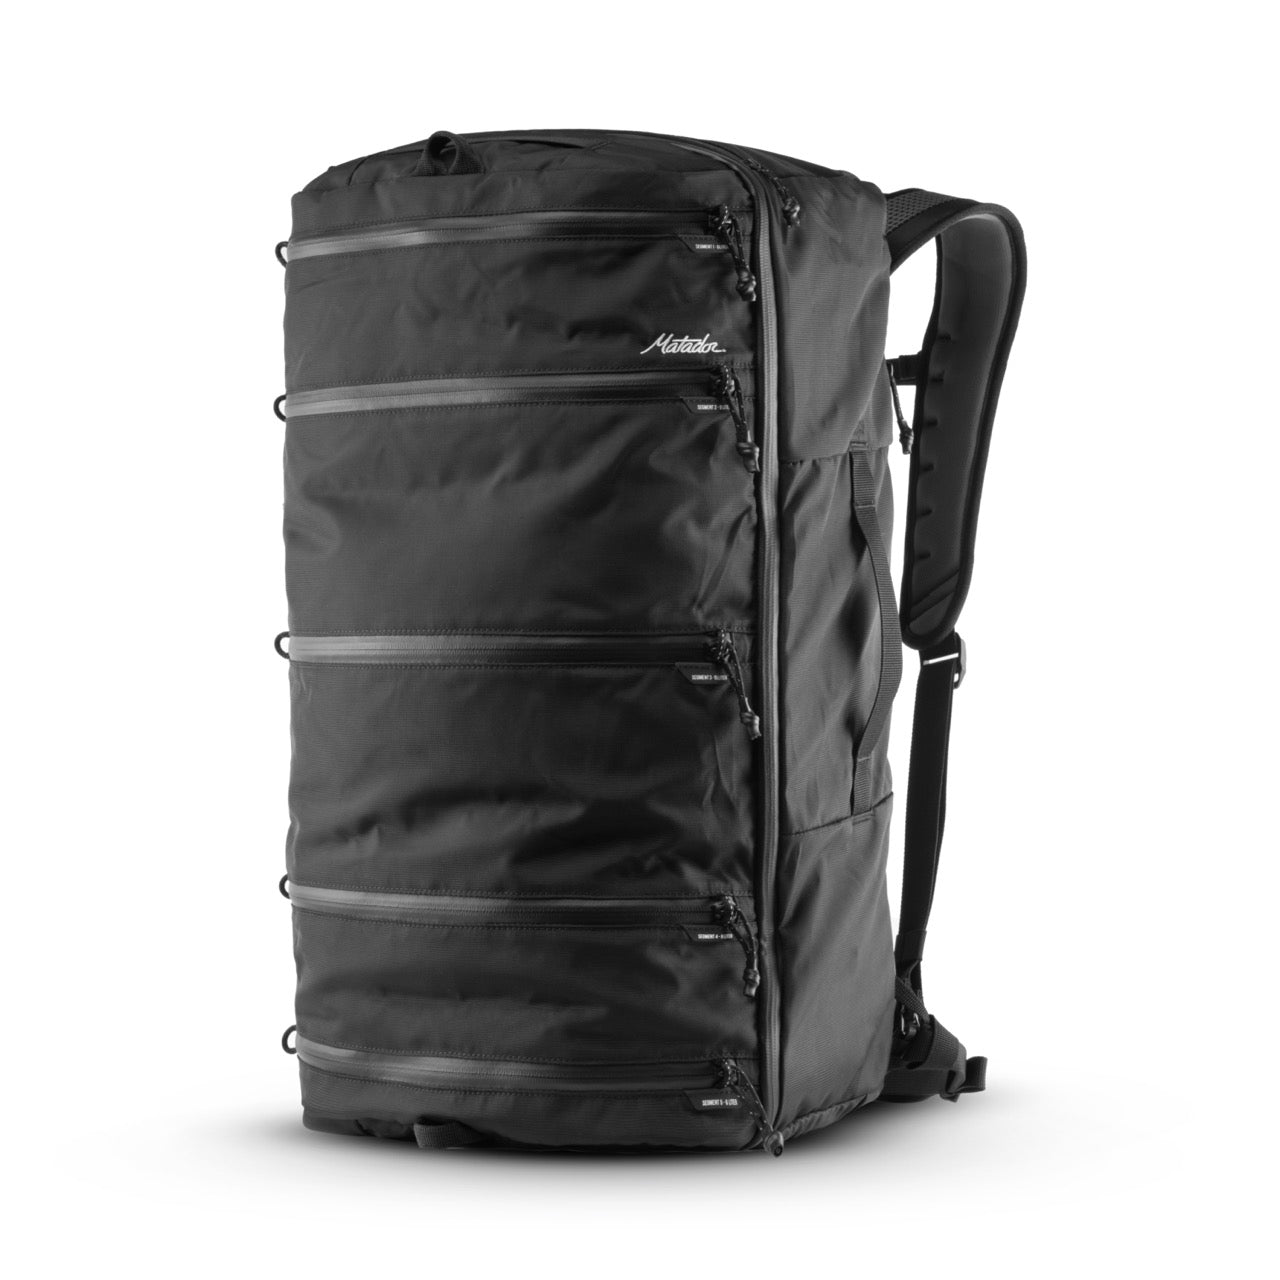 SEG45 Travel Pack